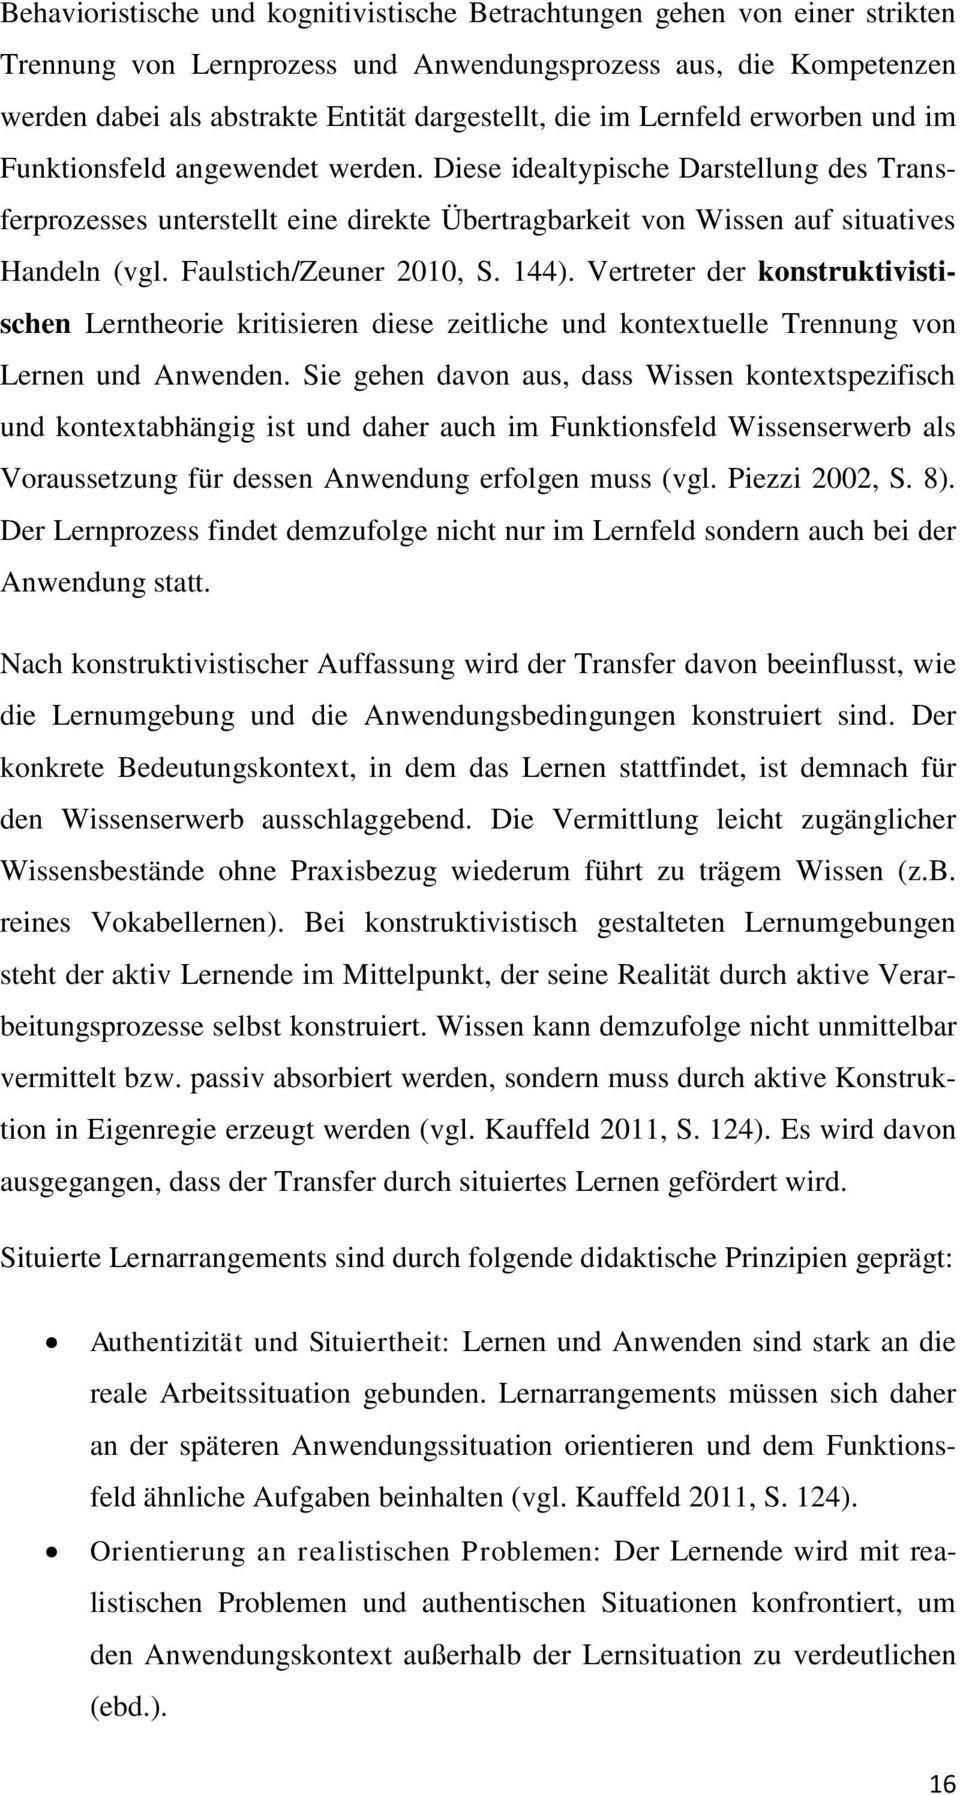 Faulstich/Zeuner 2010, S. 144). Vertreter der konstruktivistischen Lerntheorie kritisieren diese zeitliche und kontextuelle Trennung von Lernen und Anwenden.